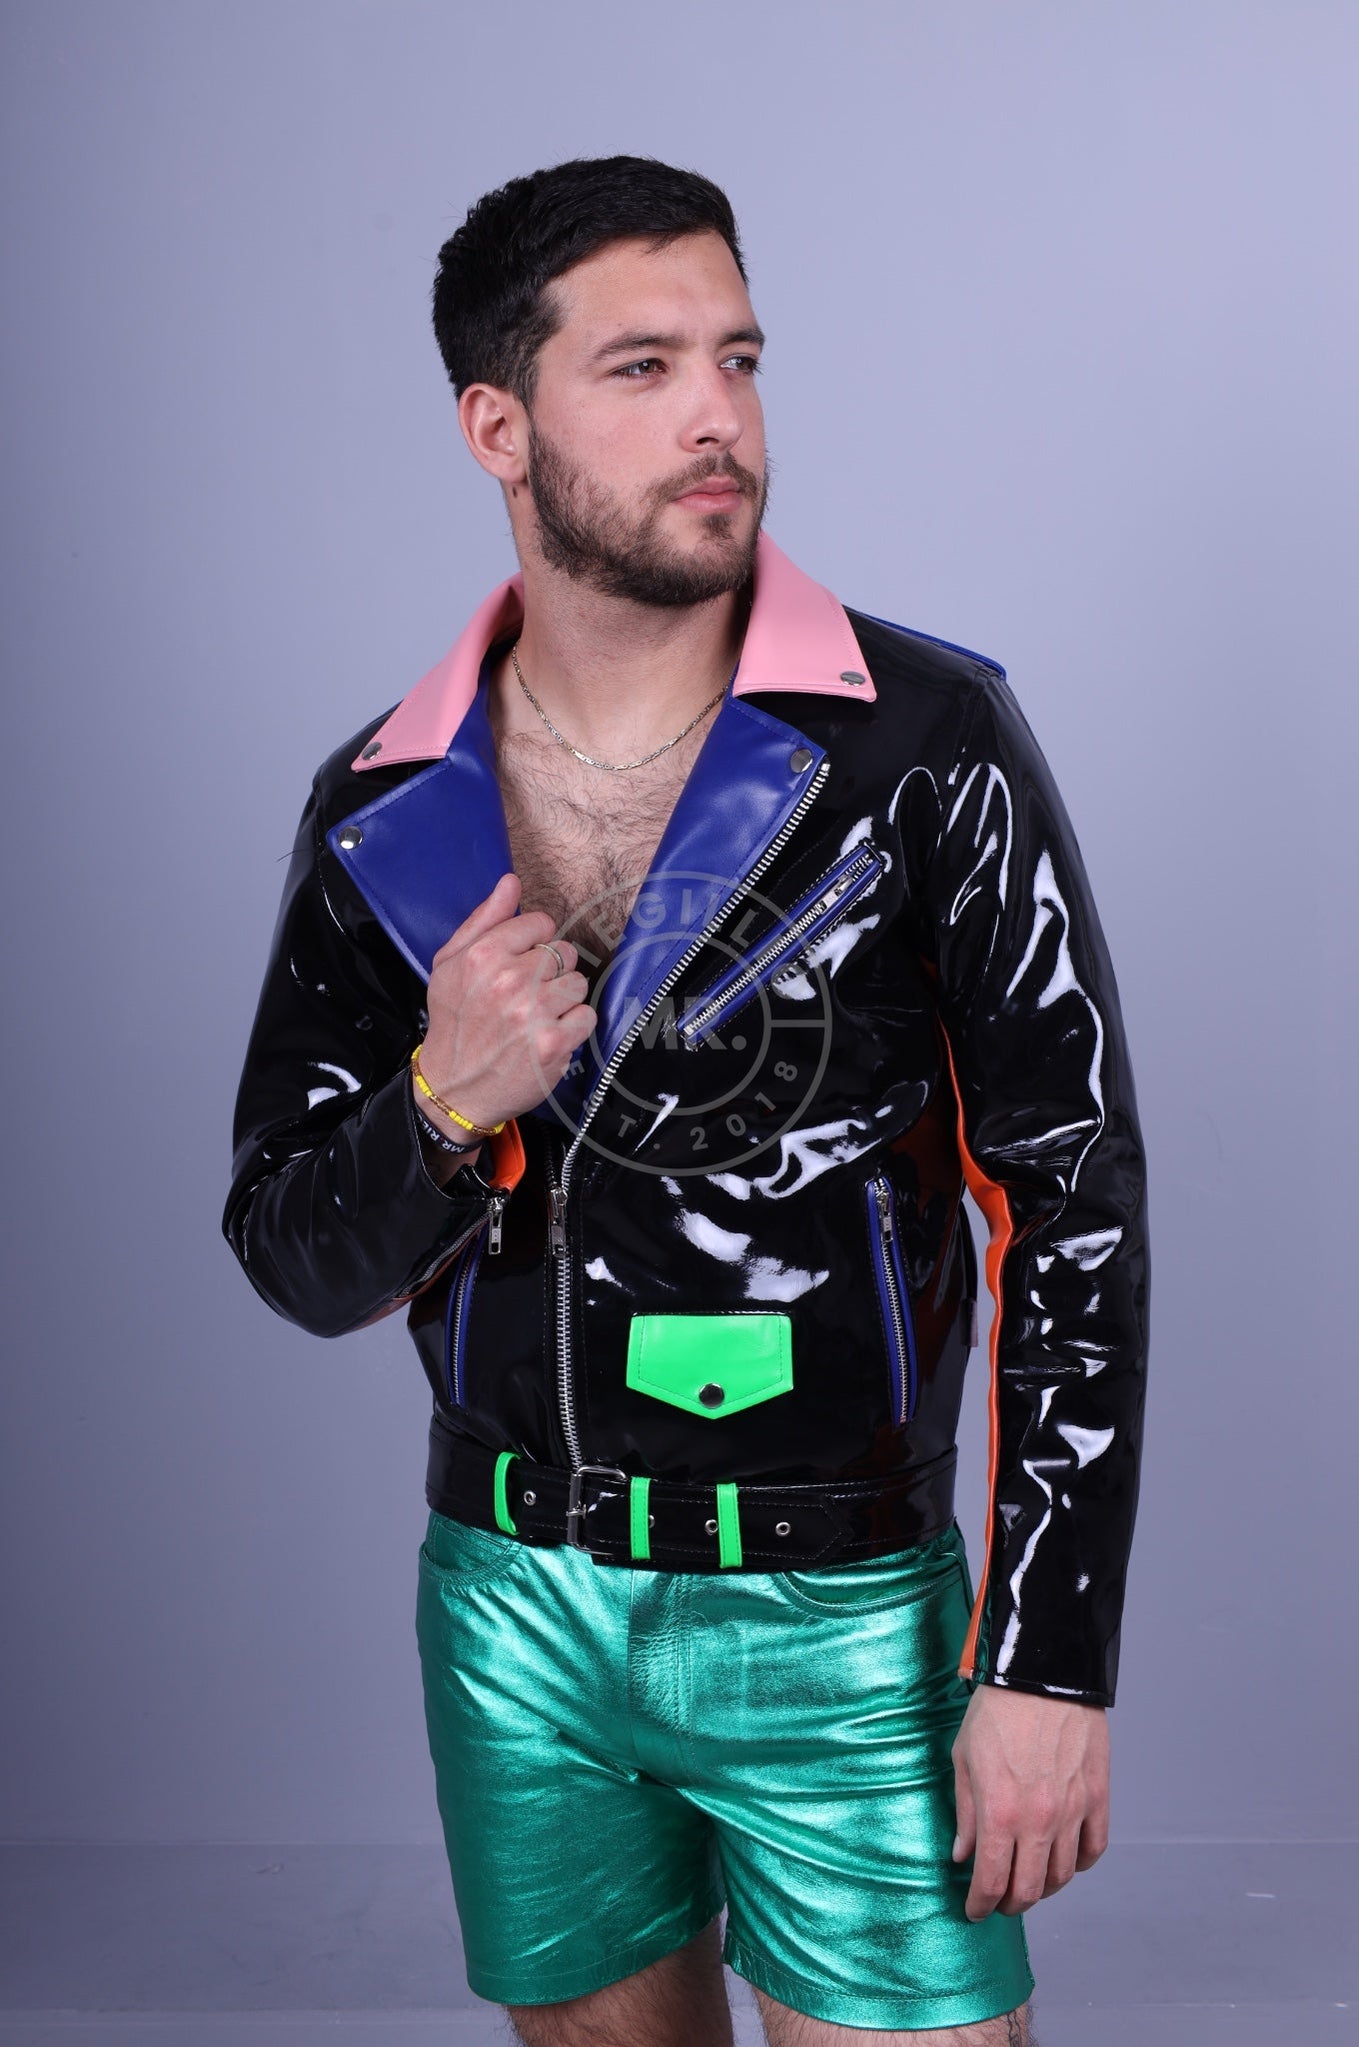 Colored PVC Brando Jacket at MR. Riegillio